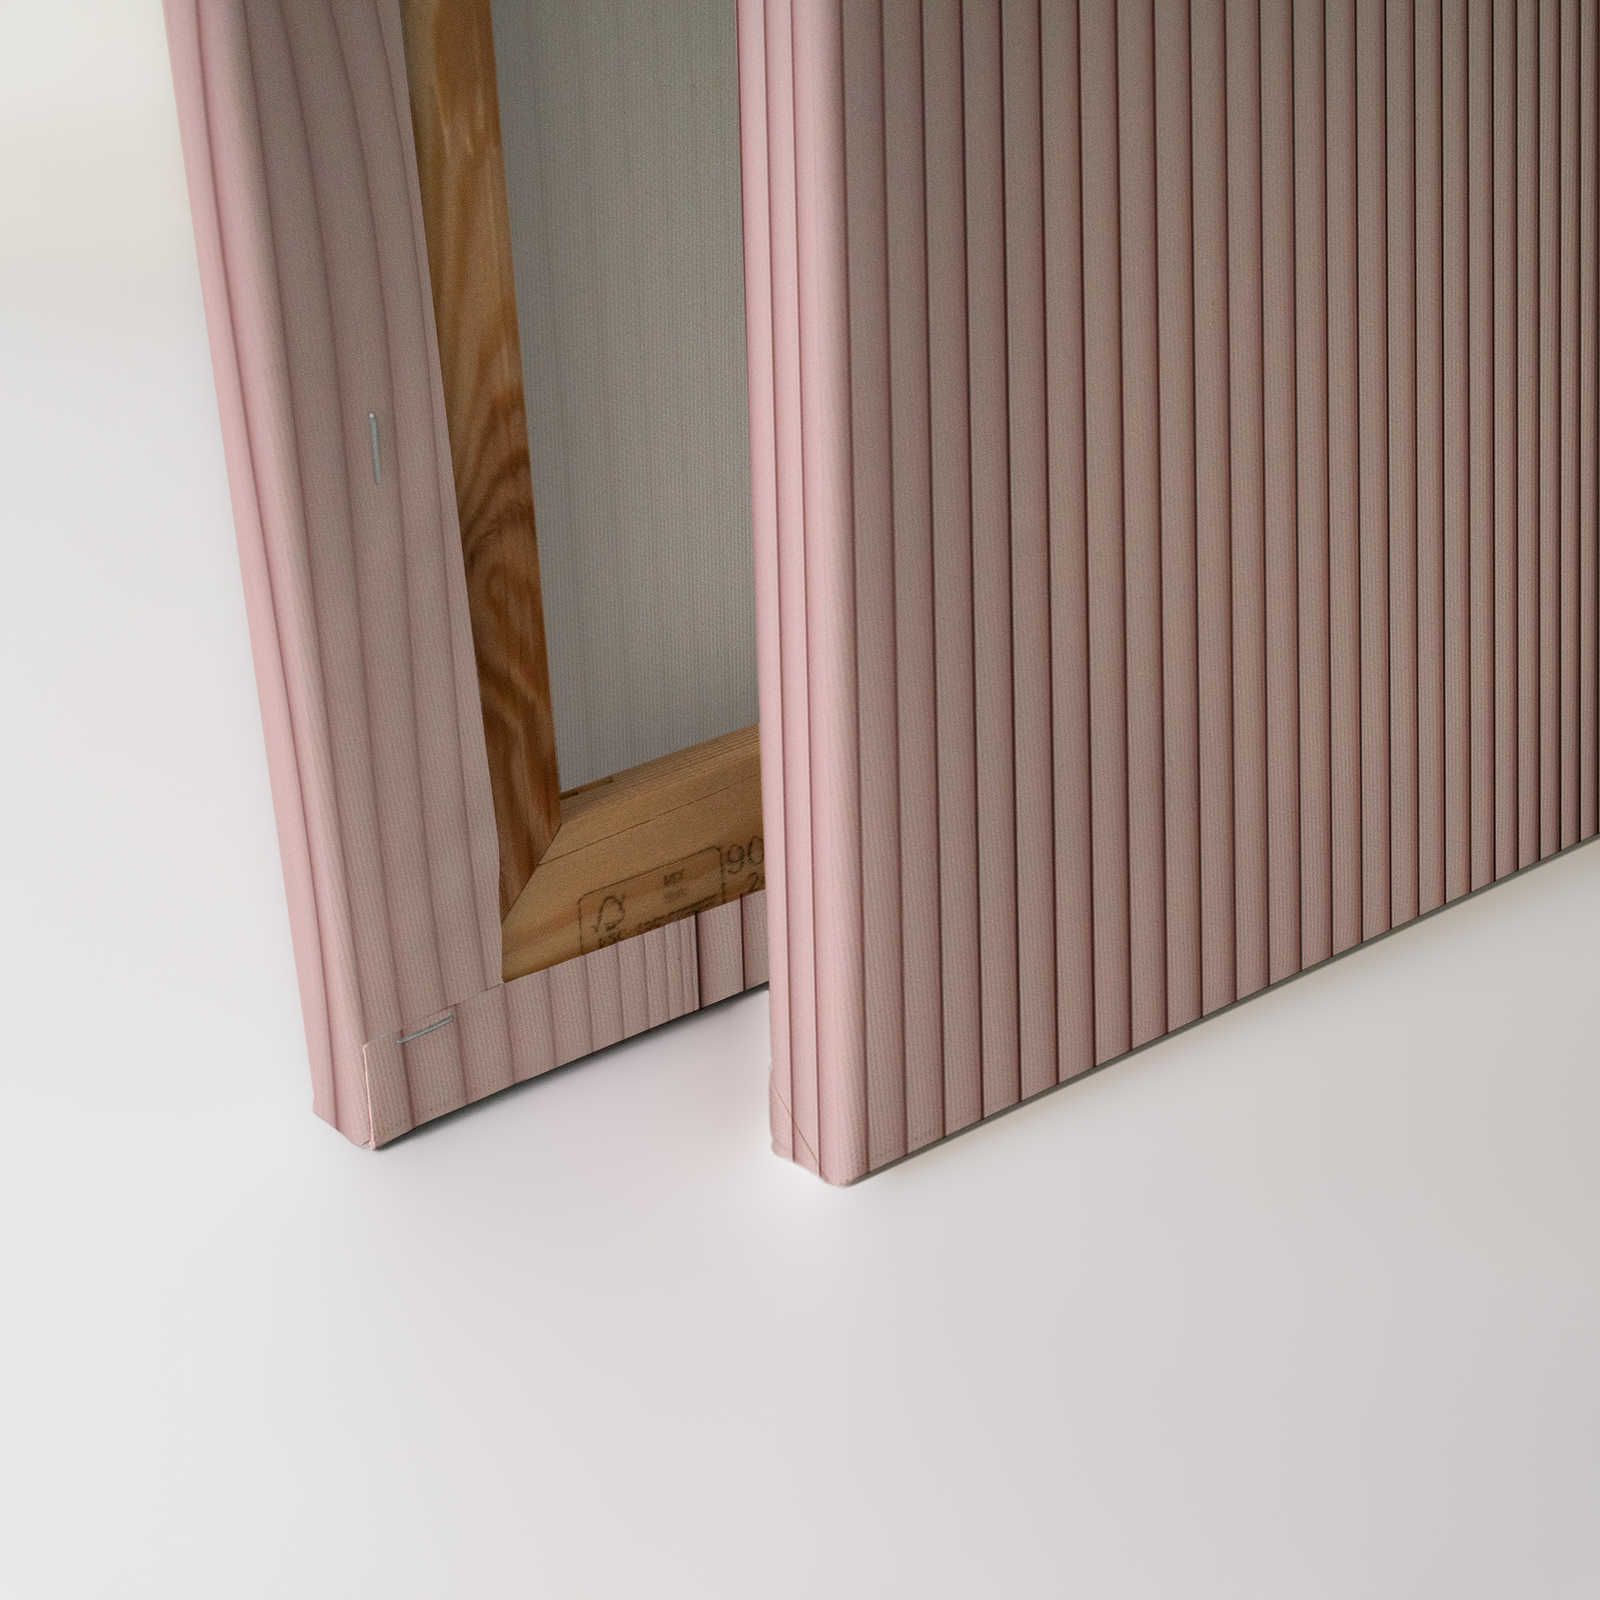             Magic Wall 4 - toile à rayures avec effet d'illusion 3D, rose et blanc - 0,90 m x 0,60 m
        